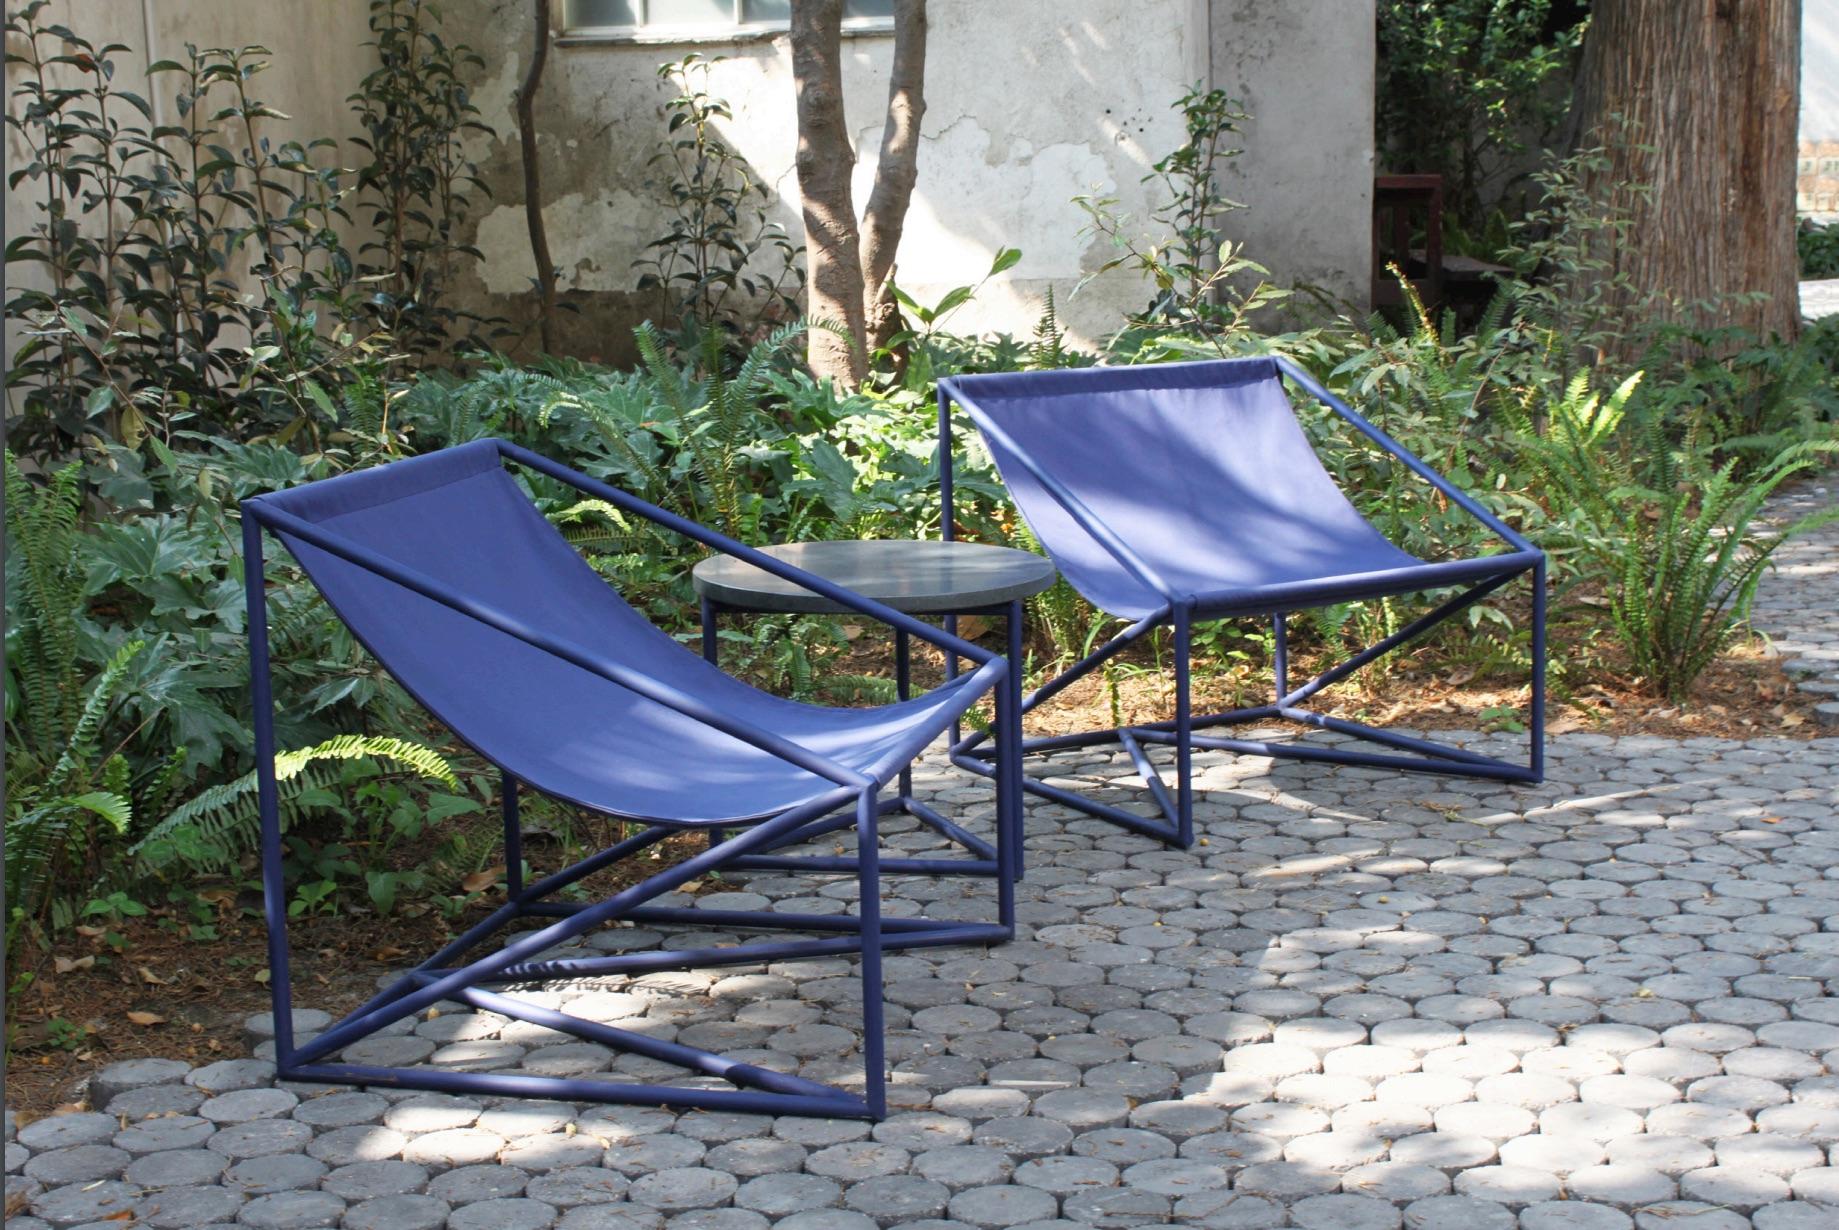 Design für Außenmöbel von Maria Beckmann. Diese Stühle für den Außenbereich sind aus Stahlrohr und dickem Segeltuch gefertigt.

Der La Tuba Outdoor Chair ist in verschiedenen Größen erhältlich.

Materialien: Stahl mit Segeltuch (Außeneinsatz) /